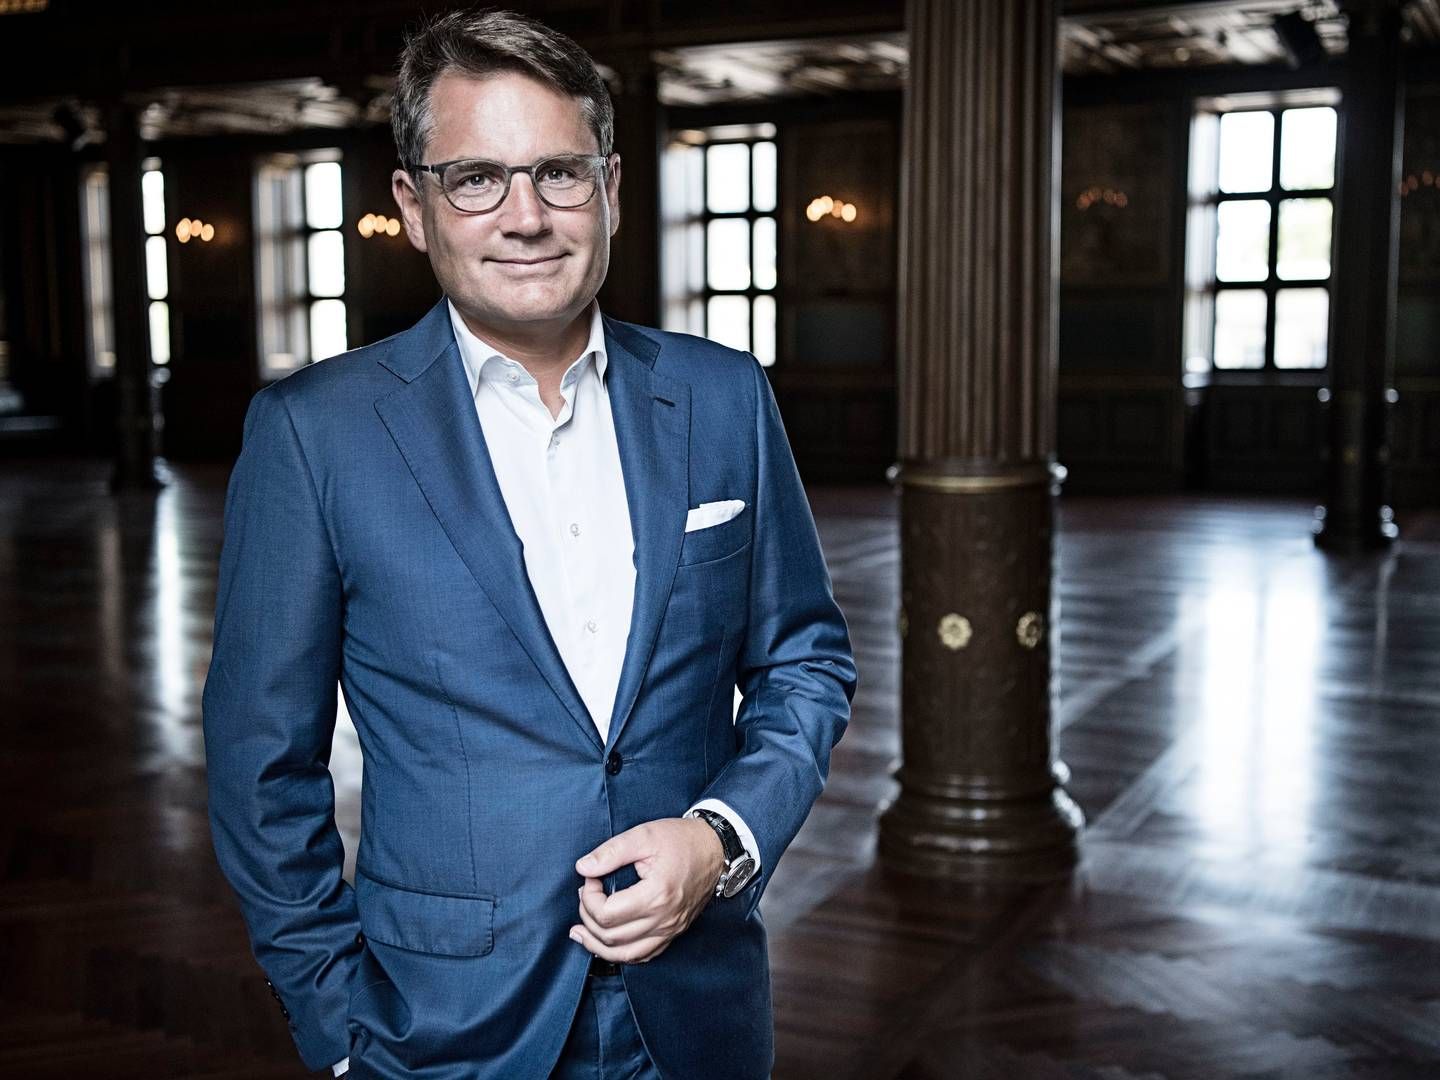 Adm. direktør i Dansk Erhverv, Brian Mikkelsen, kalder det "stærkt alarmerende." | Foto: Pr/dansk Erhverv